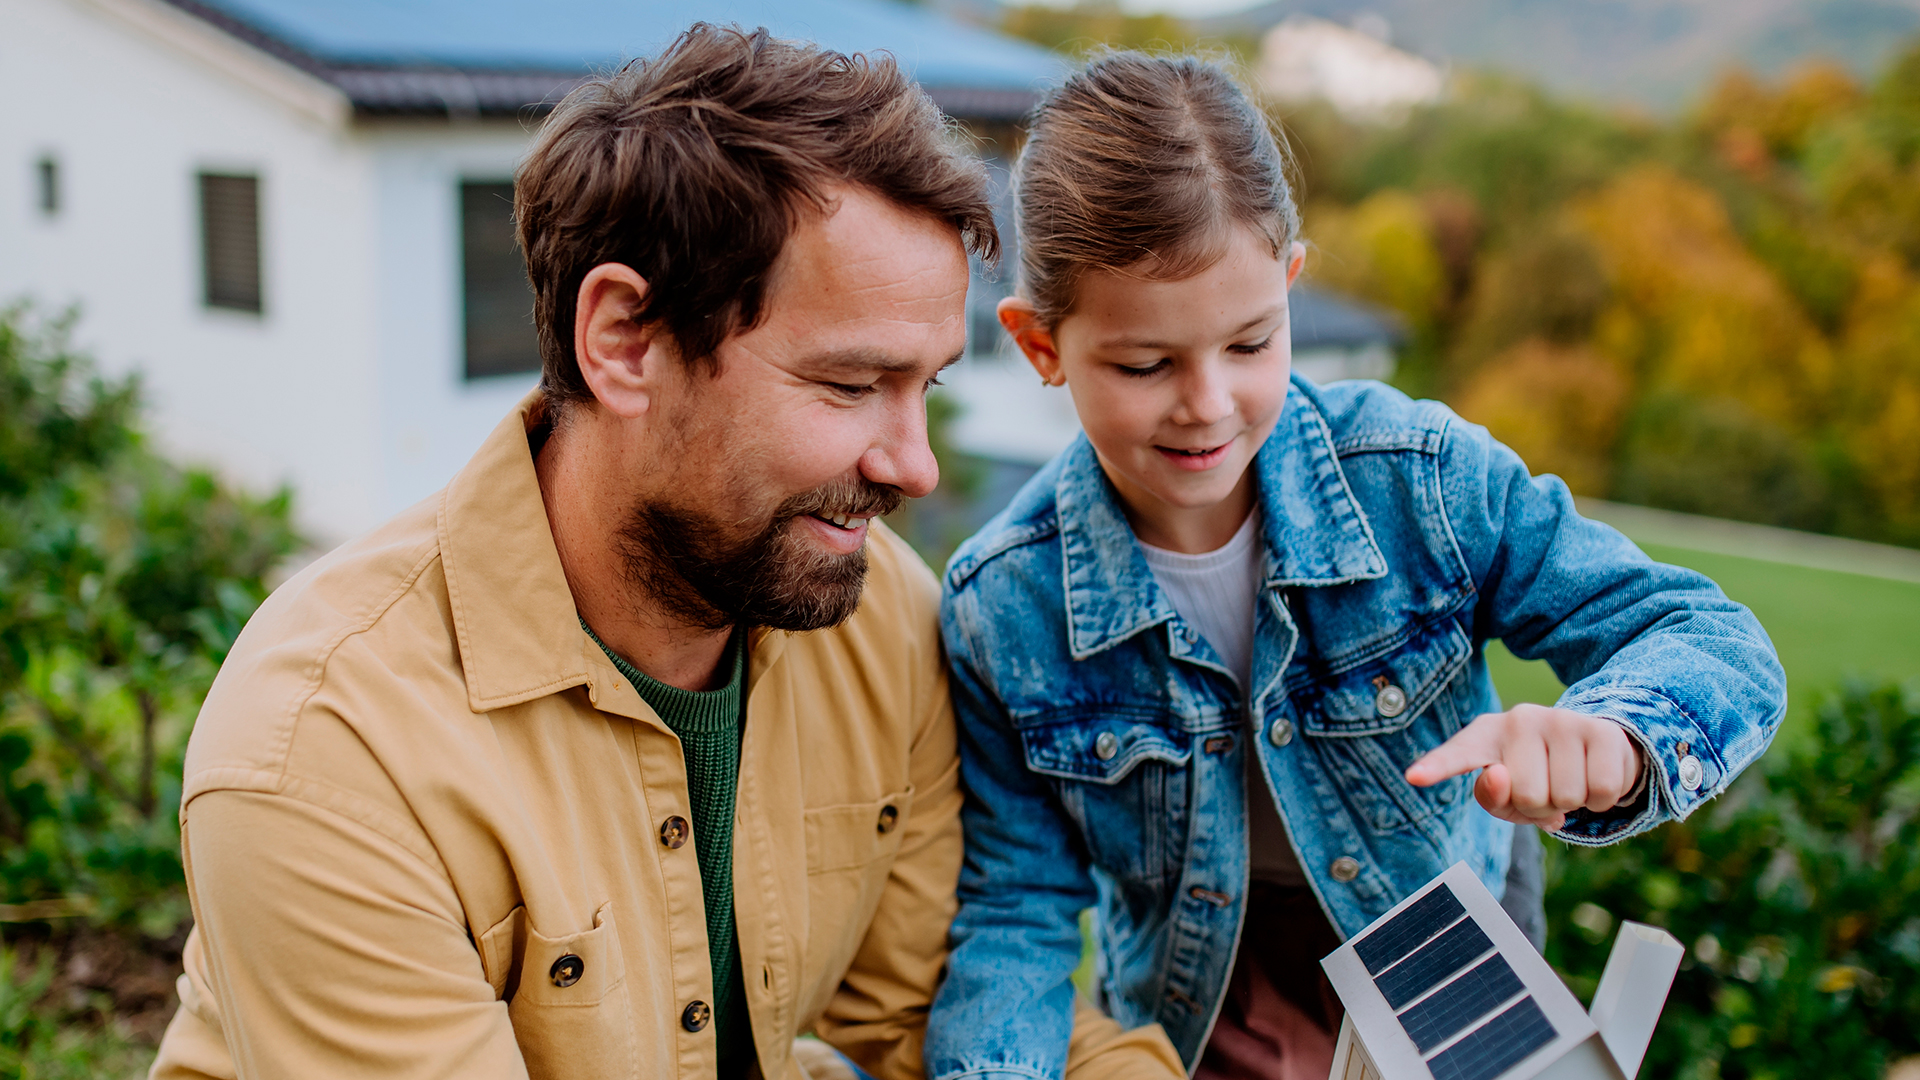 Custos com energia elétrica são uma das principais fontes de gastos de uma família | Foto: Shutterstock